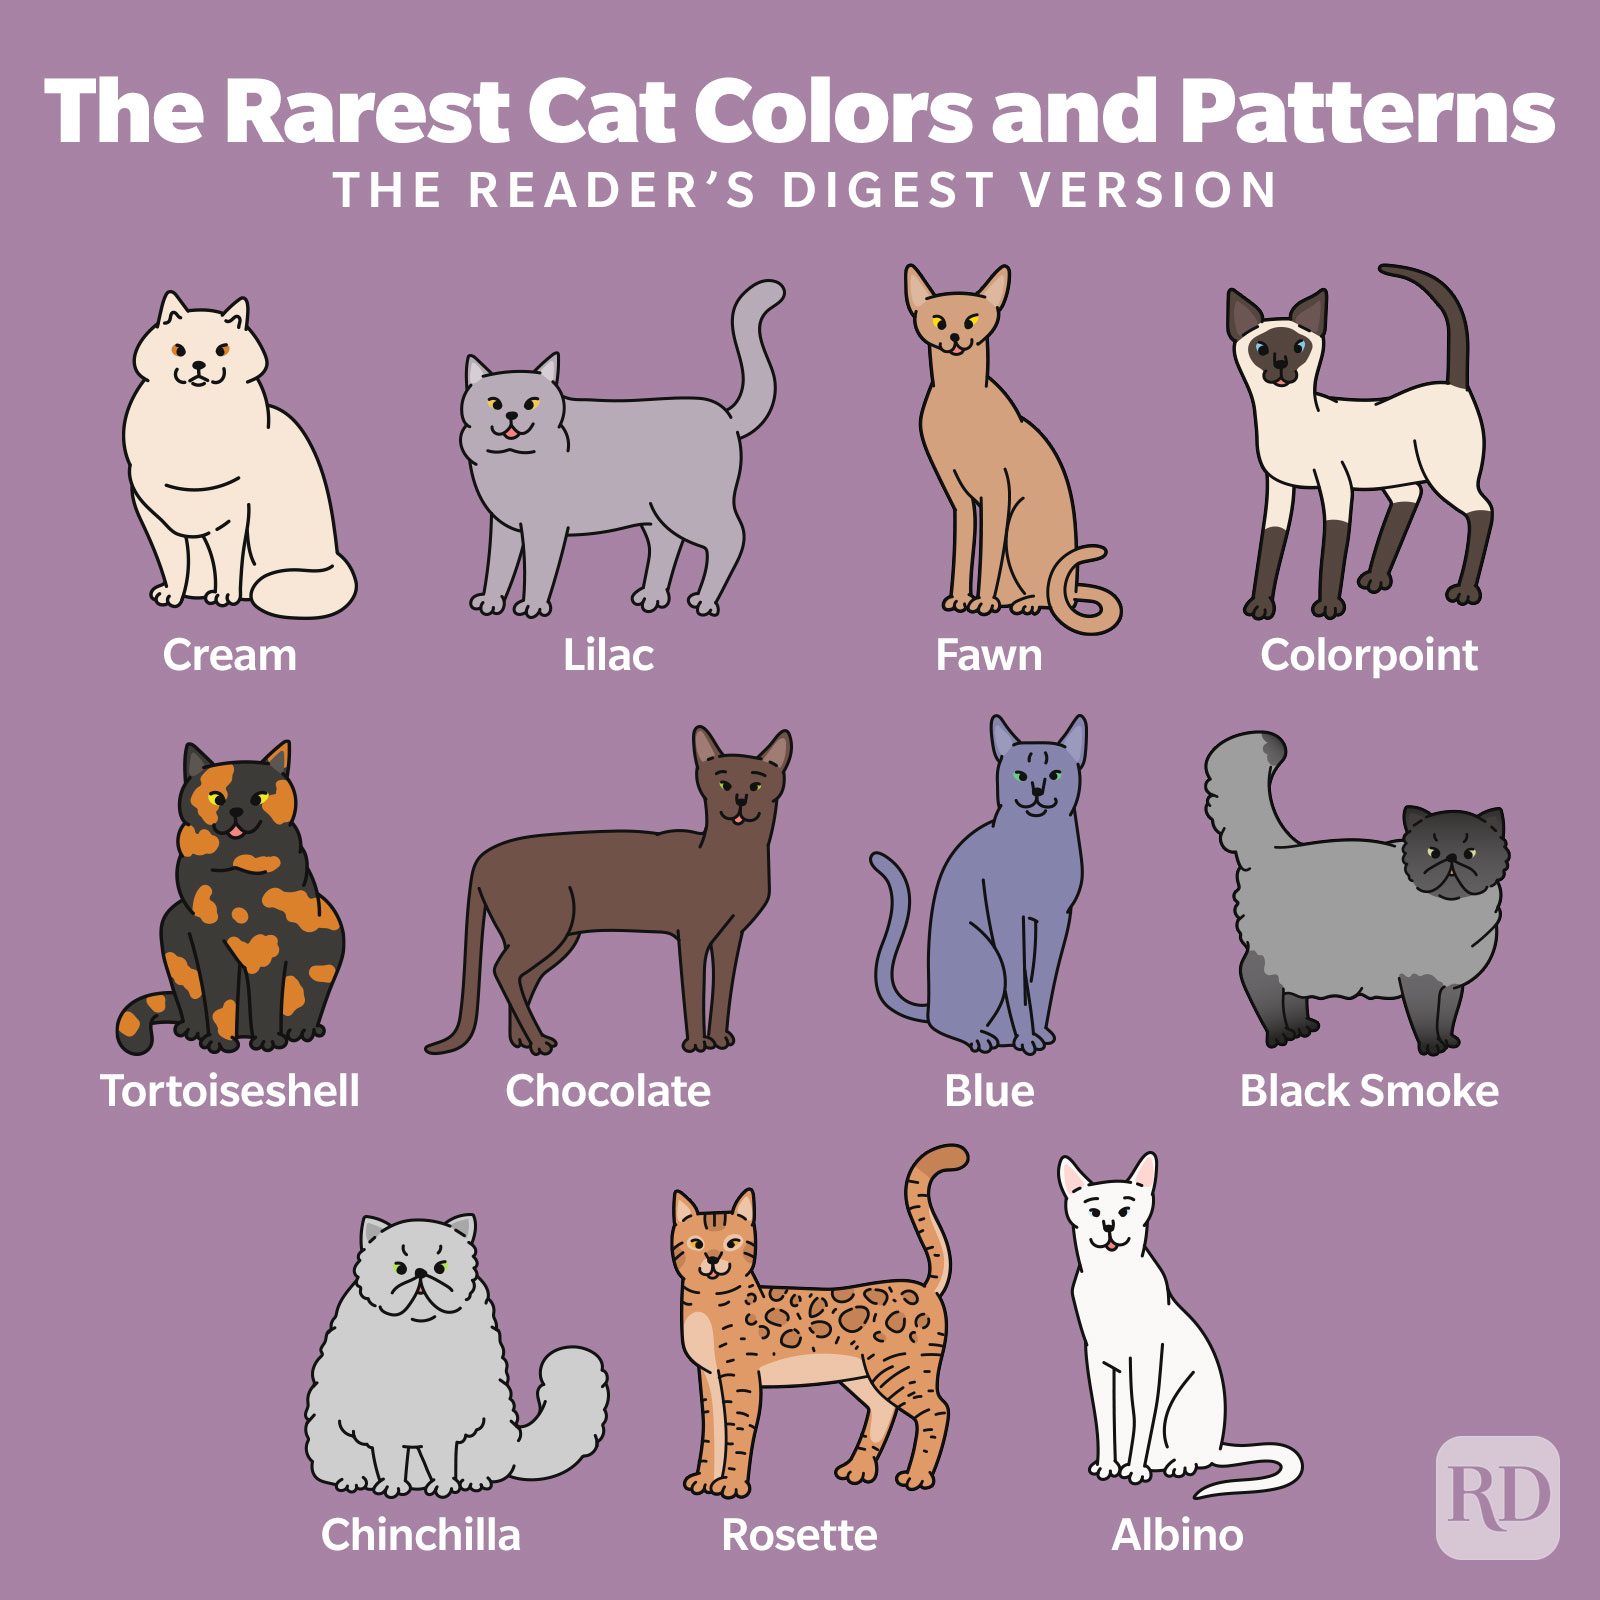 cat fur pattern